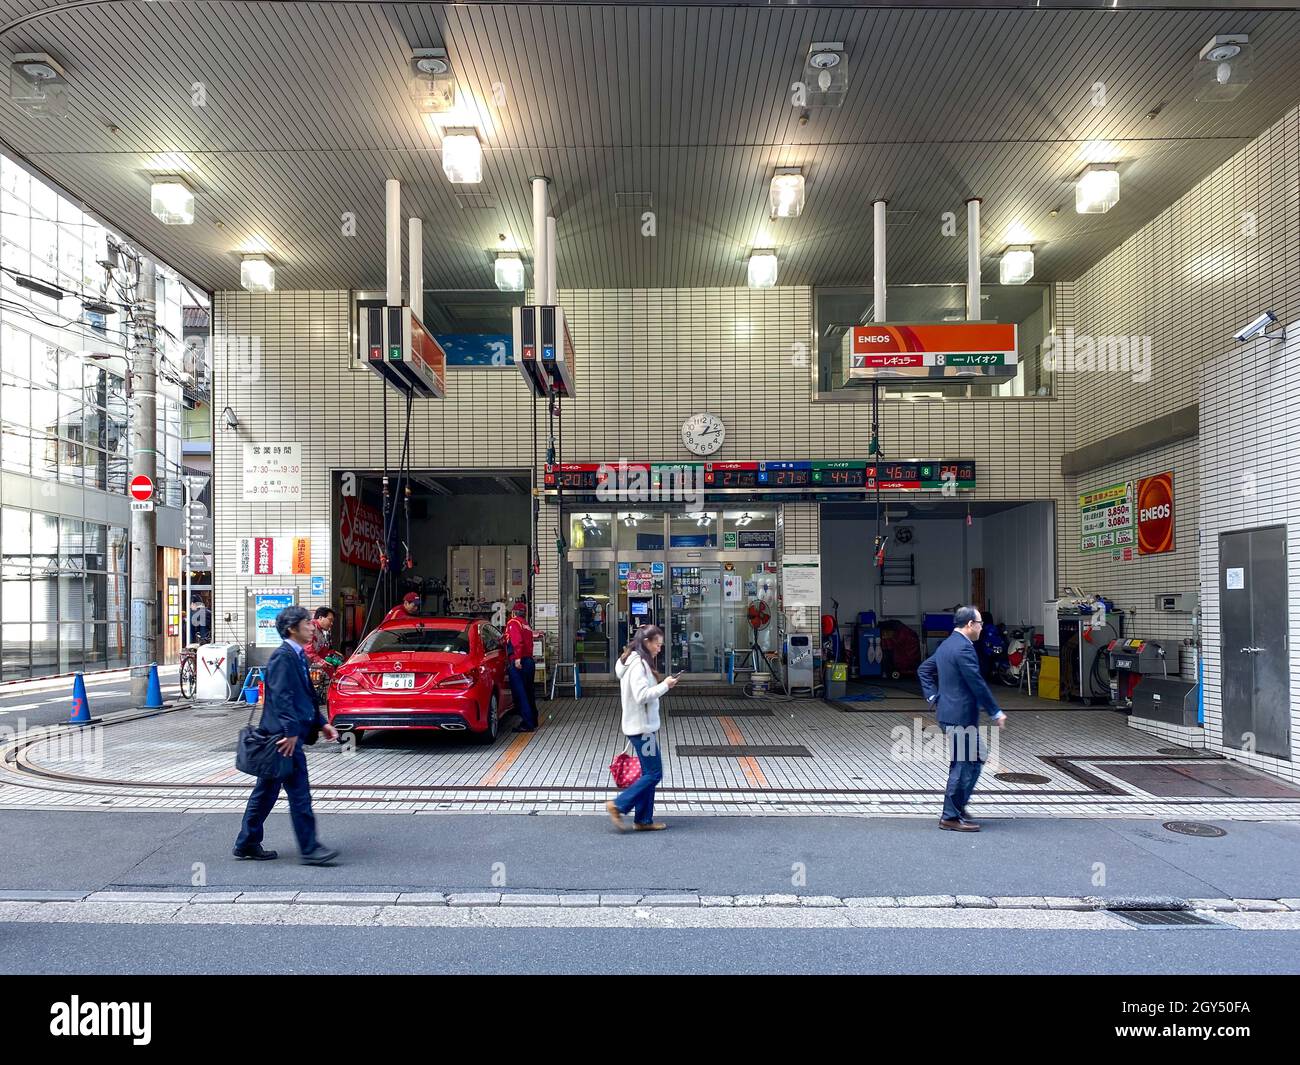 Tokio, Japón - 20 de noviembre de 2019: Estación de gasolina ENEOS en Tokio Foto de stock